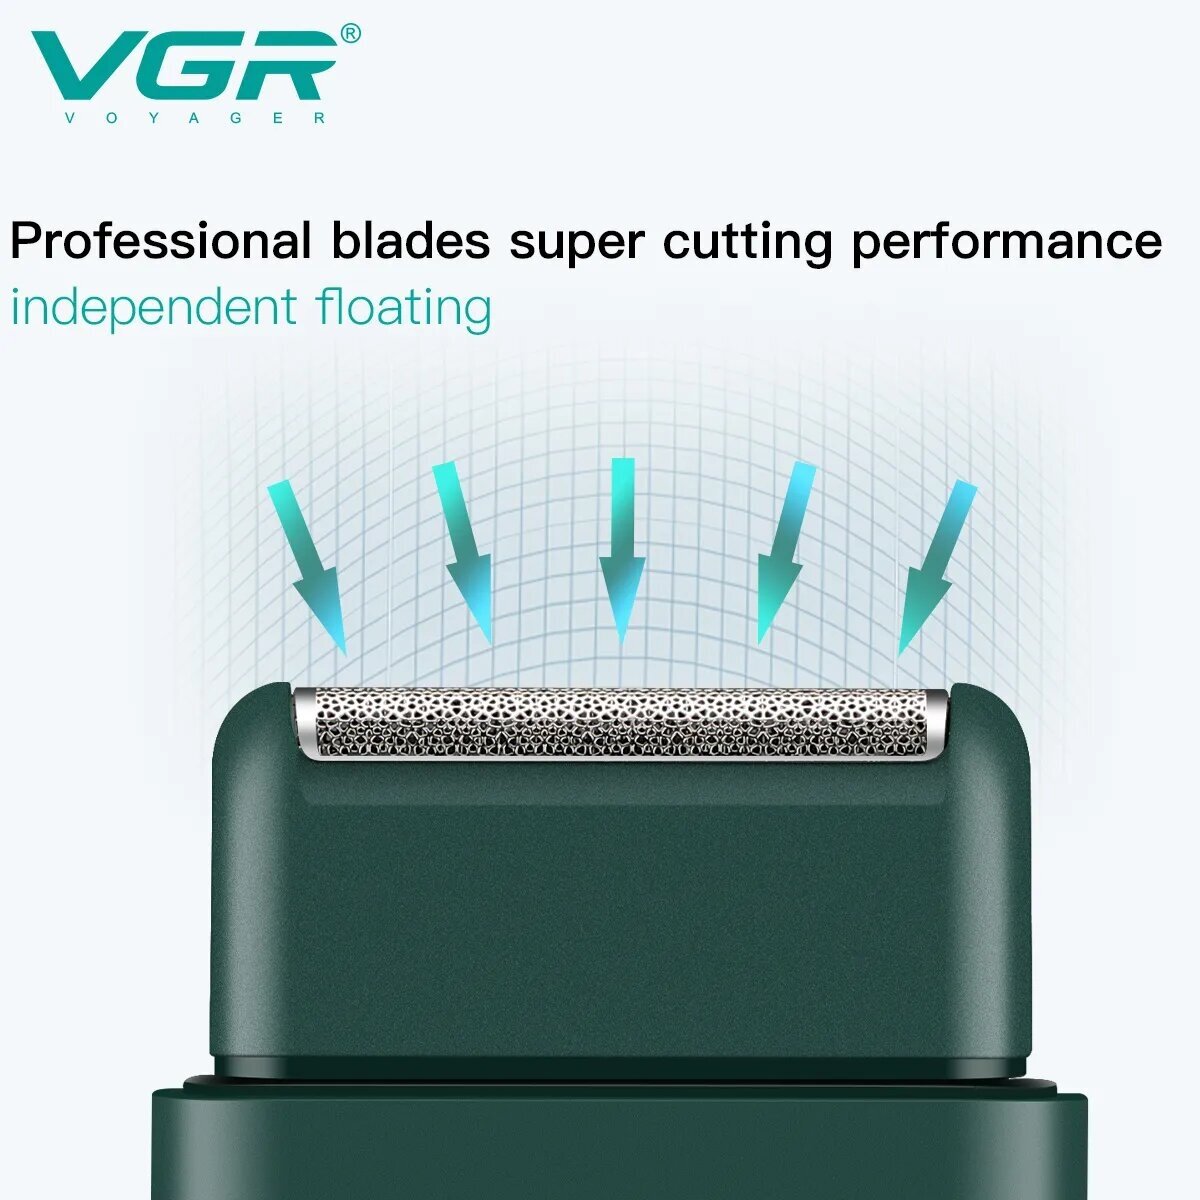 Электробритва VGR V-390, зеленый